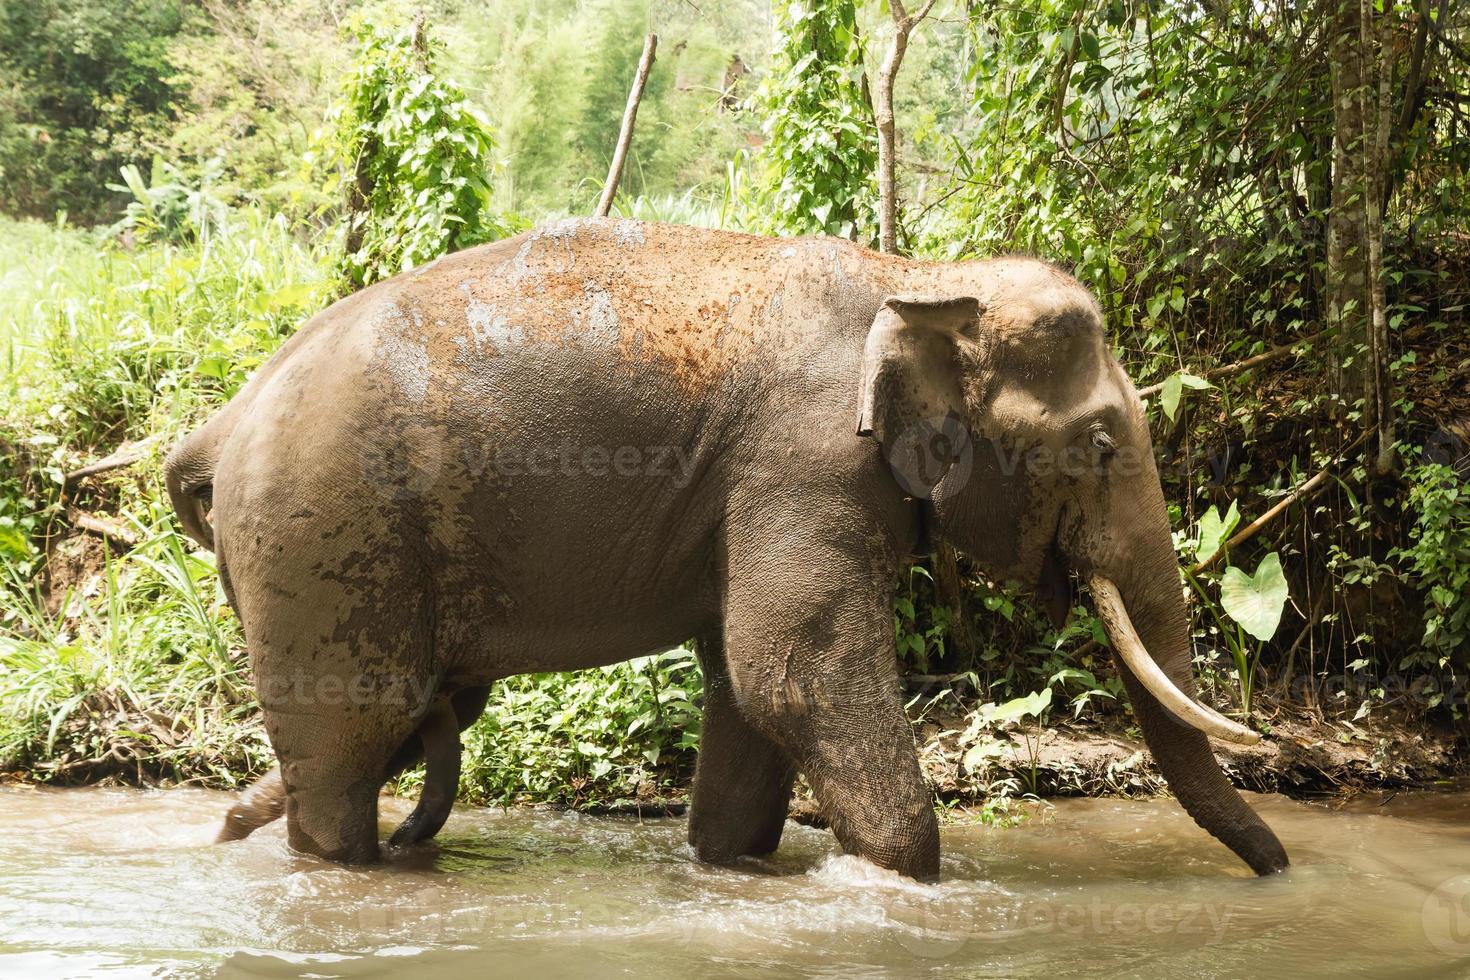 olifant is het baden in een vijver tussen een regenwoud. Chiang mai provincie, Thailand. foto